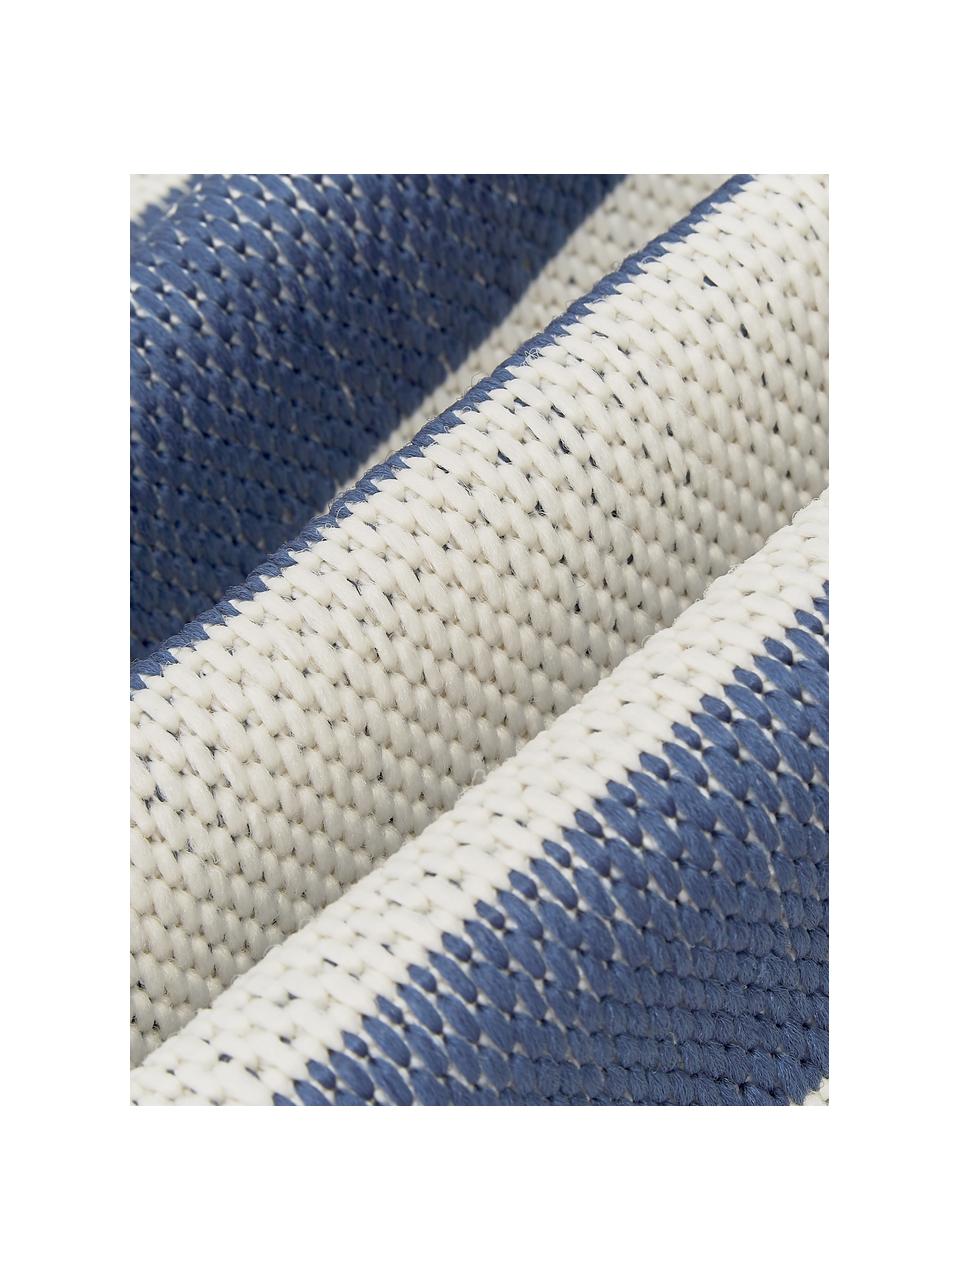 Gestreifter In- & Outdoor-Teppich Axa in Blau/Cremeweiß, 86% Polypropylen, 14% Polyester, Cremeweiß, Blau, B 160 x L 230 cm (Größe M)